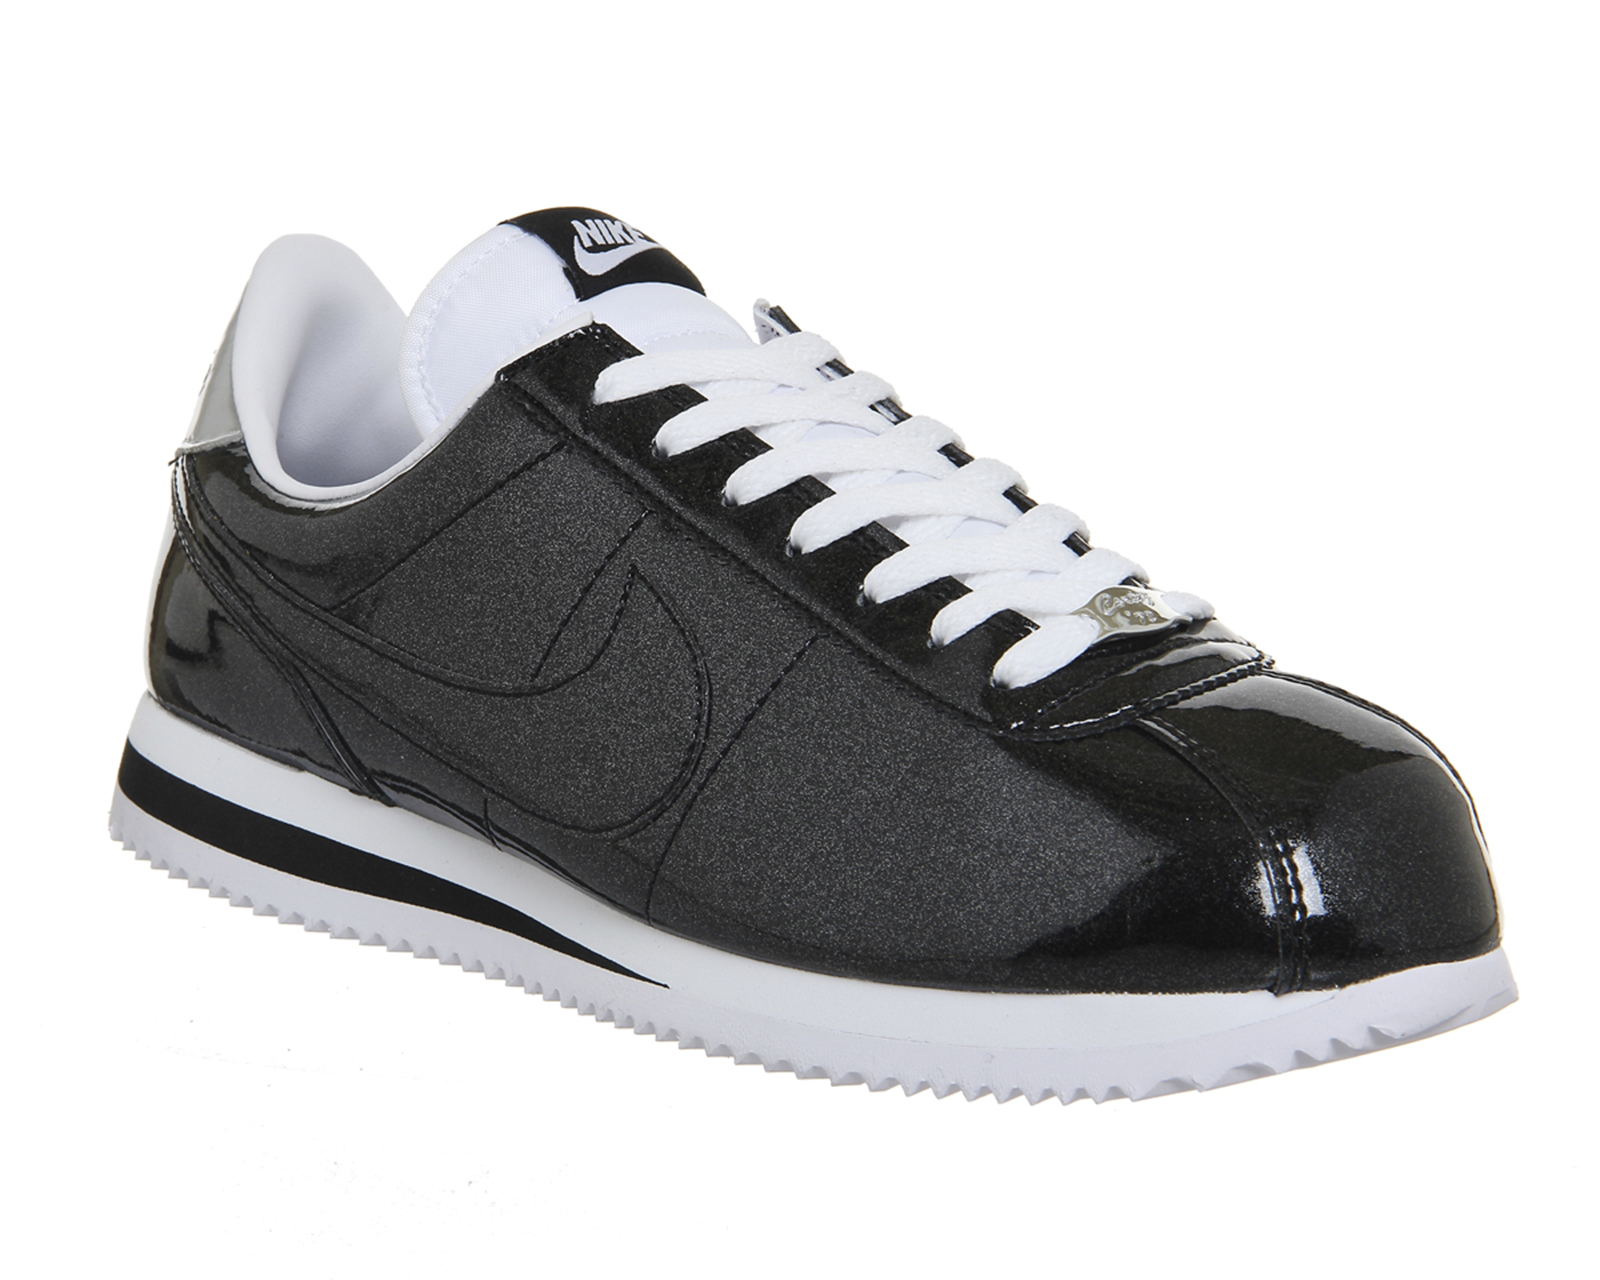 NikeCortez BasicBlack Black White Metallic Silver Qs